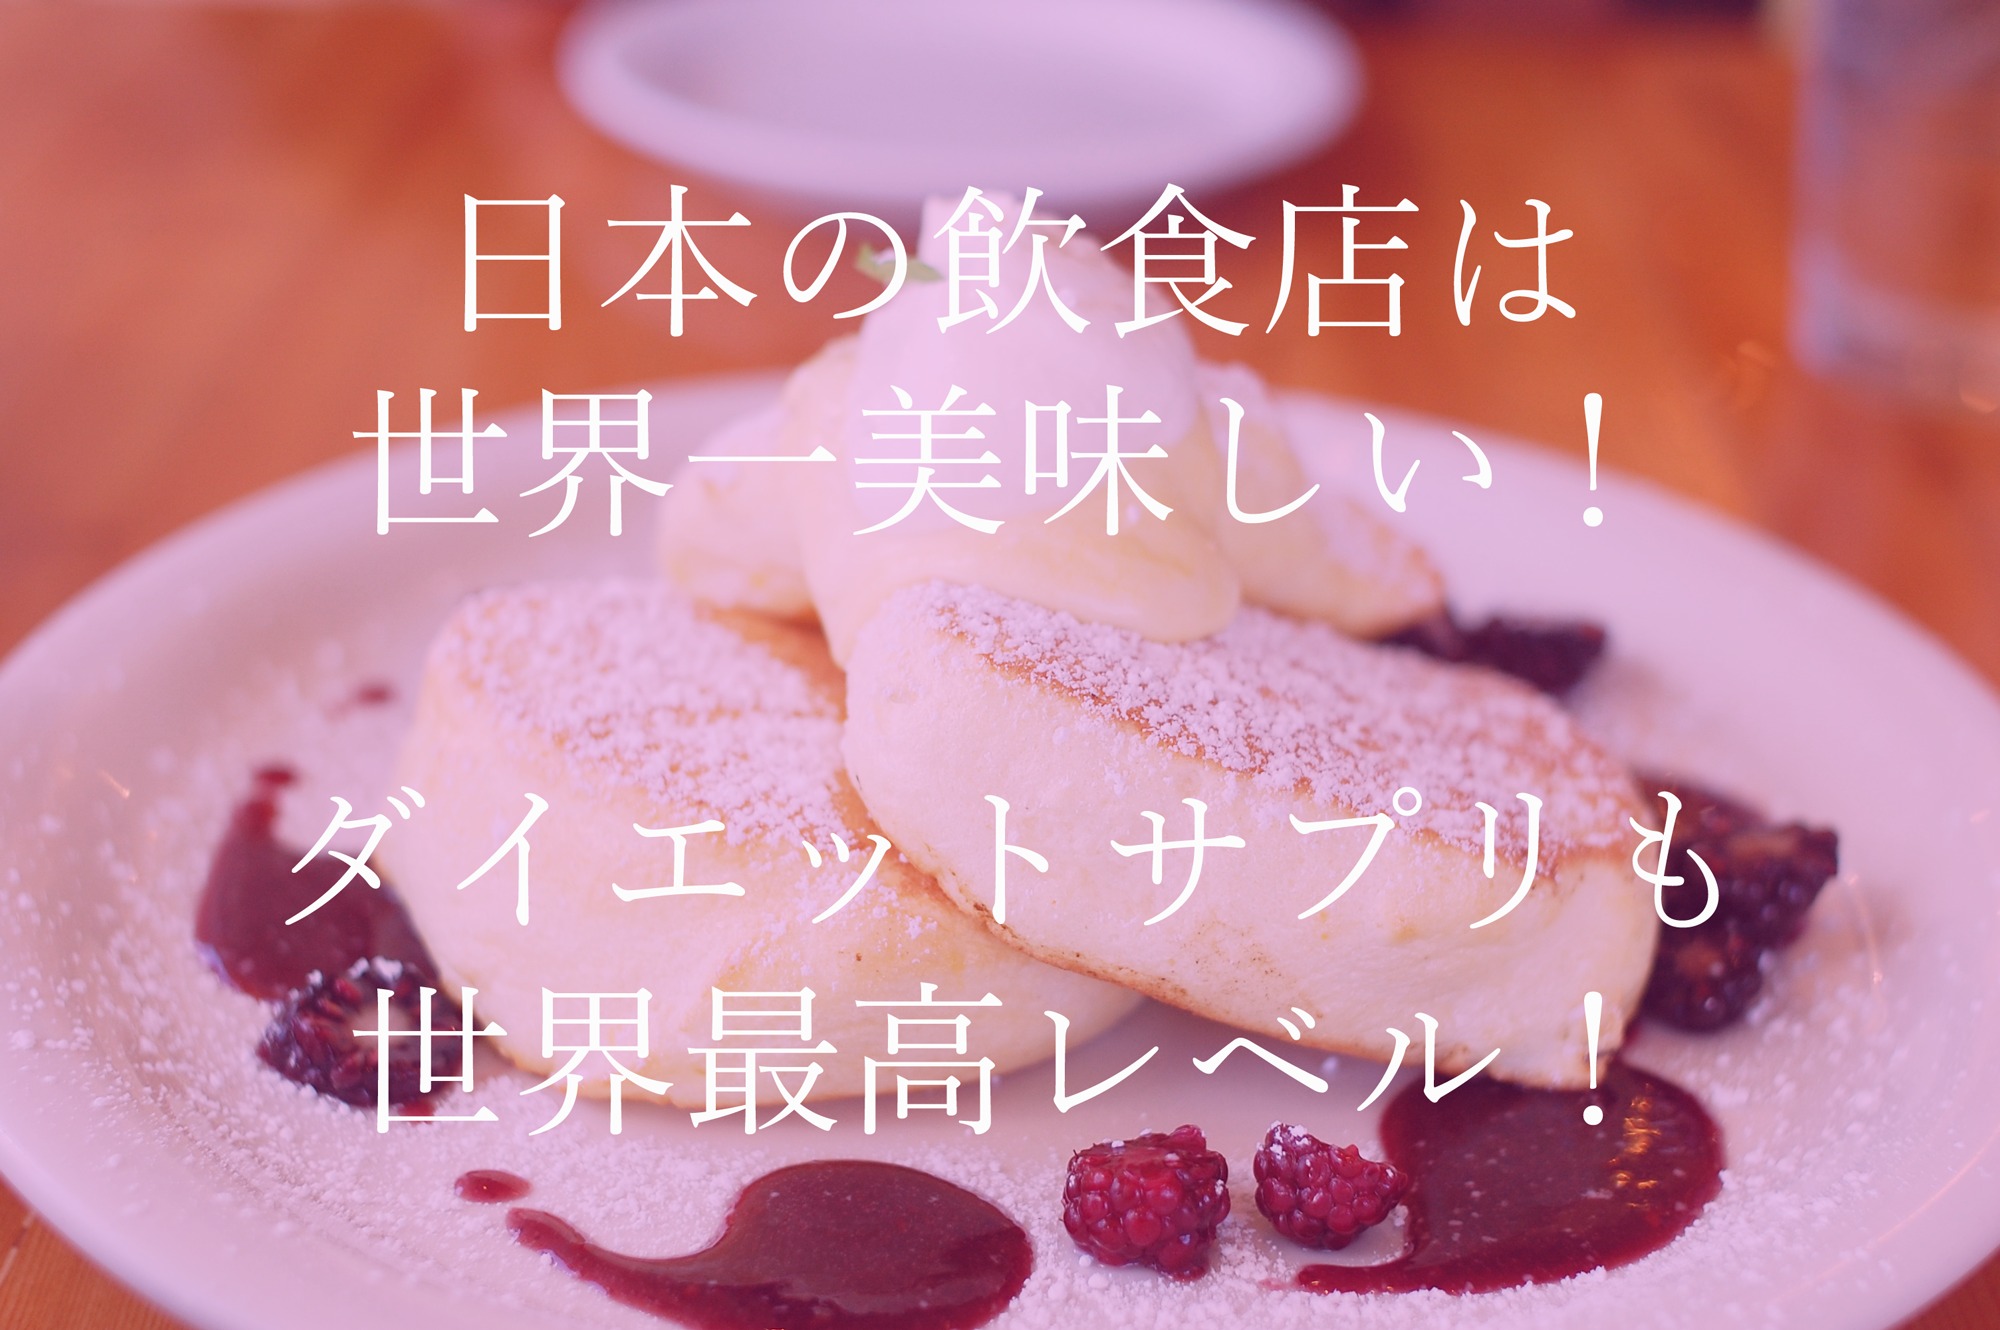 ＜日本の飲食店は世界一おすすめ！＞『日本の腸活やビフィズス菌に注目したダイエットサプリは世界最高レベル！』